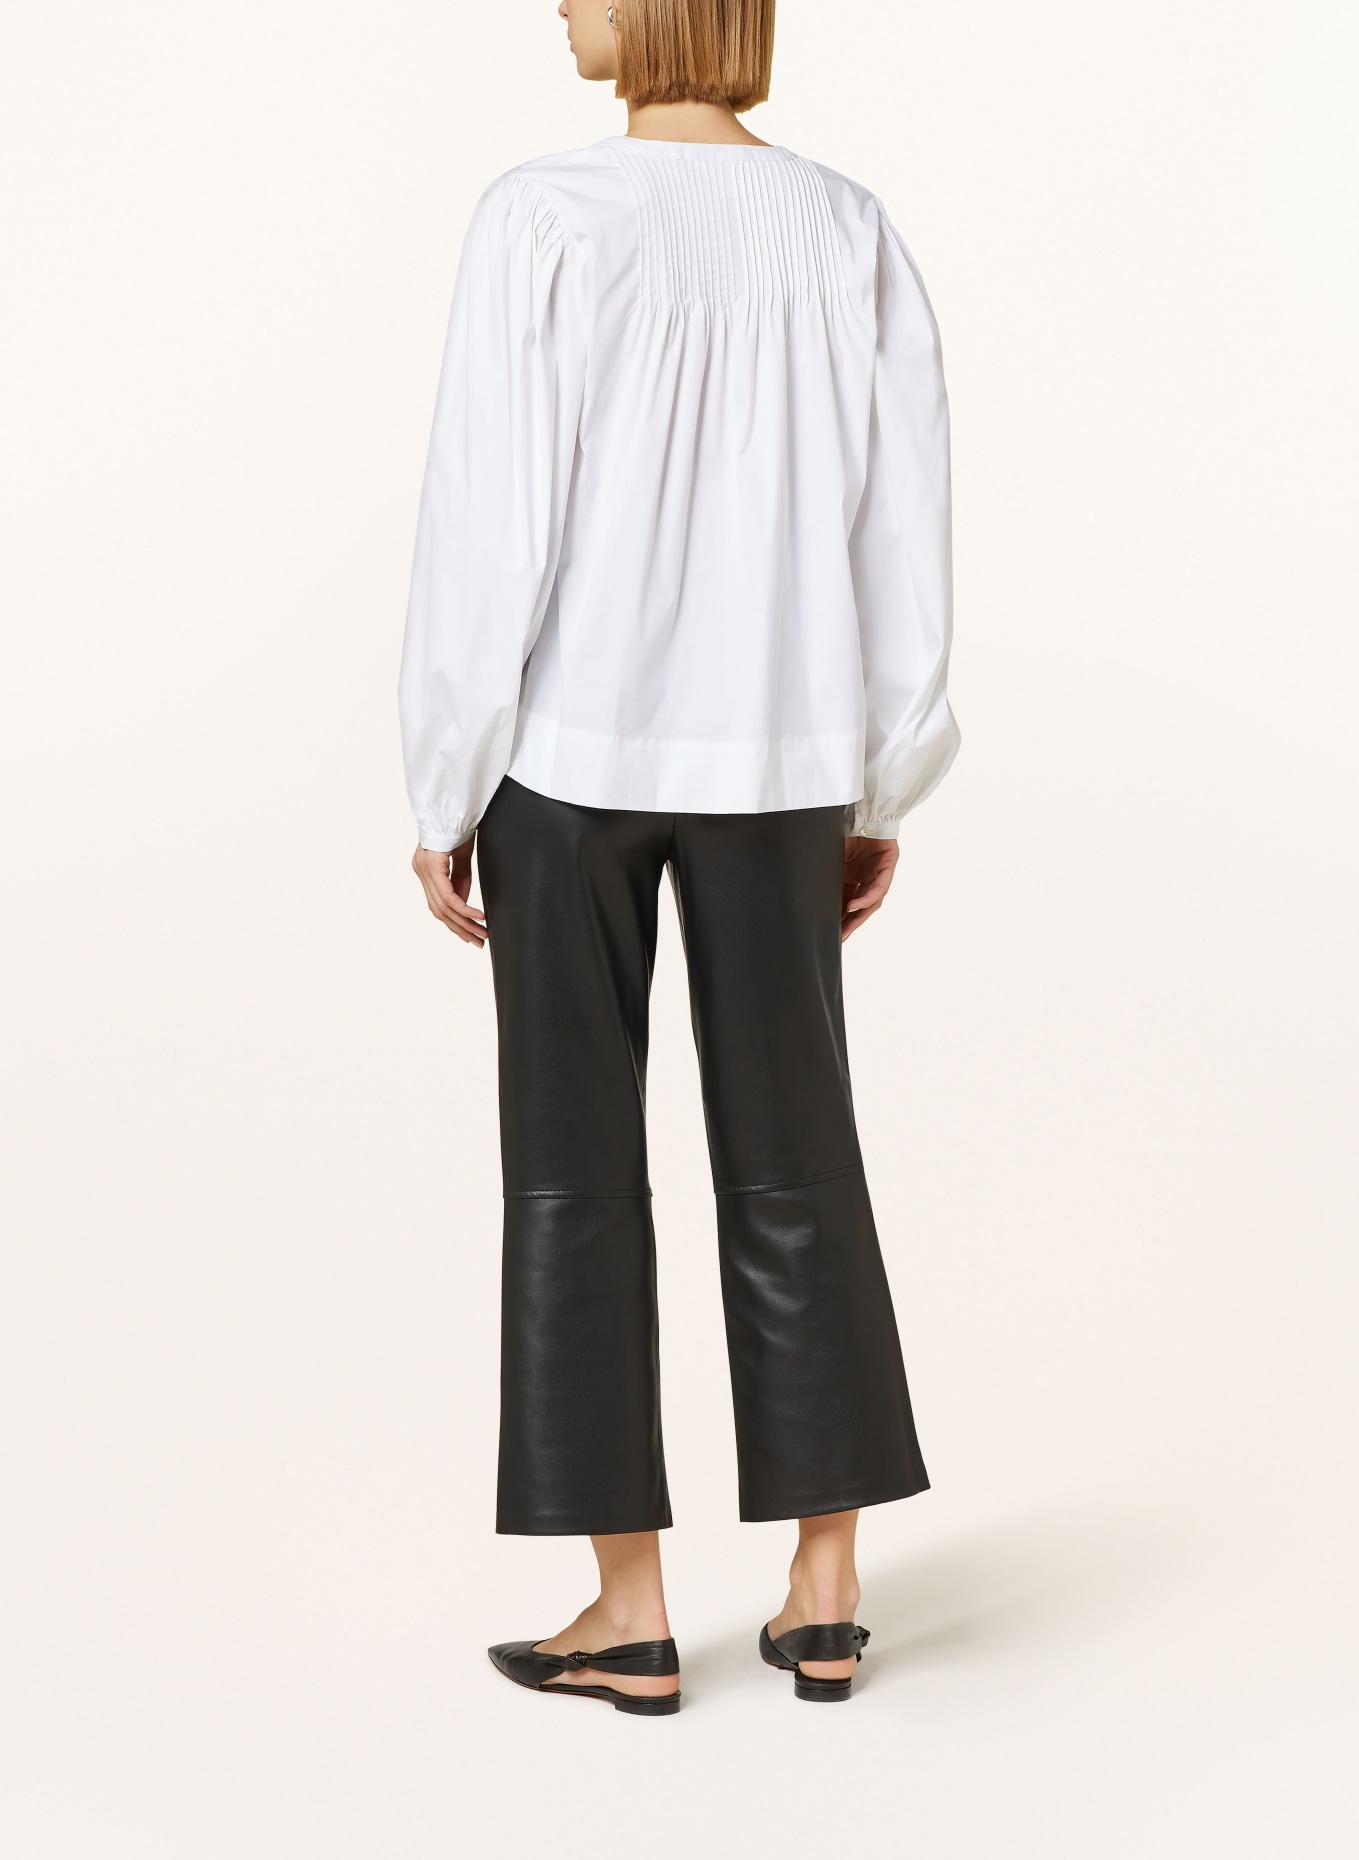 TONNO & PANNA Shirt blouse, Color: WHITE (Image 3)